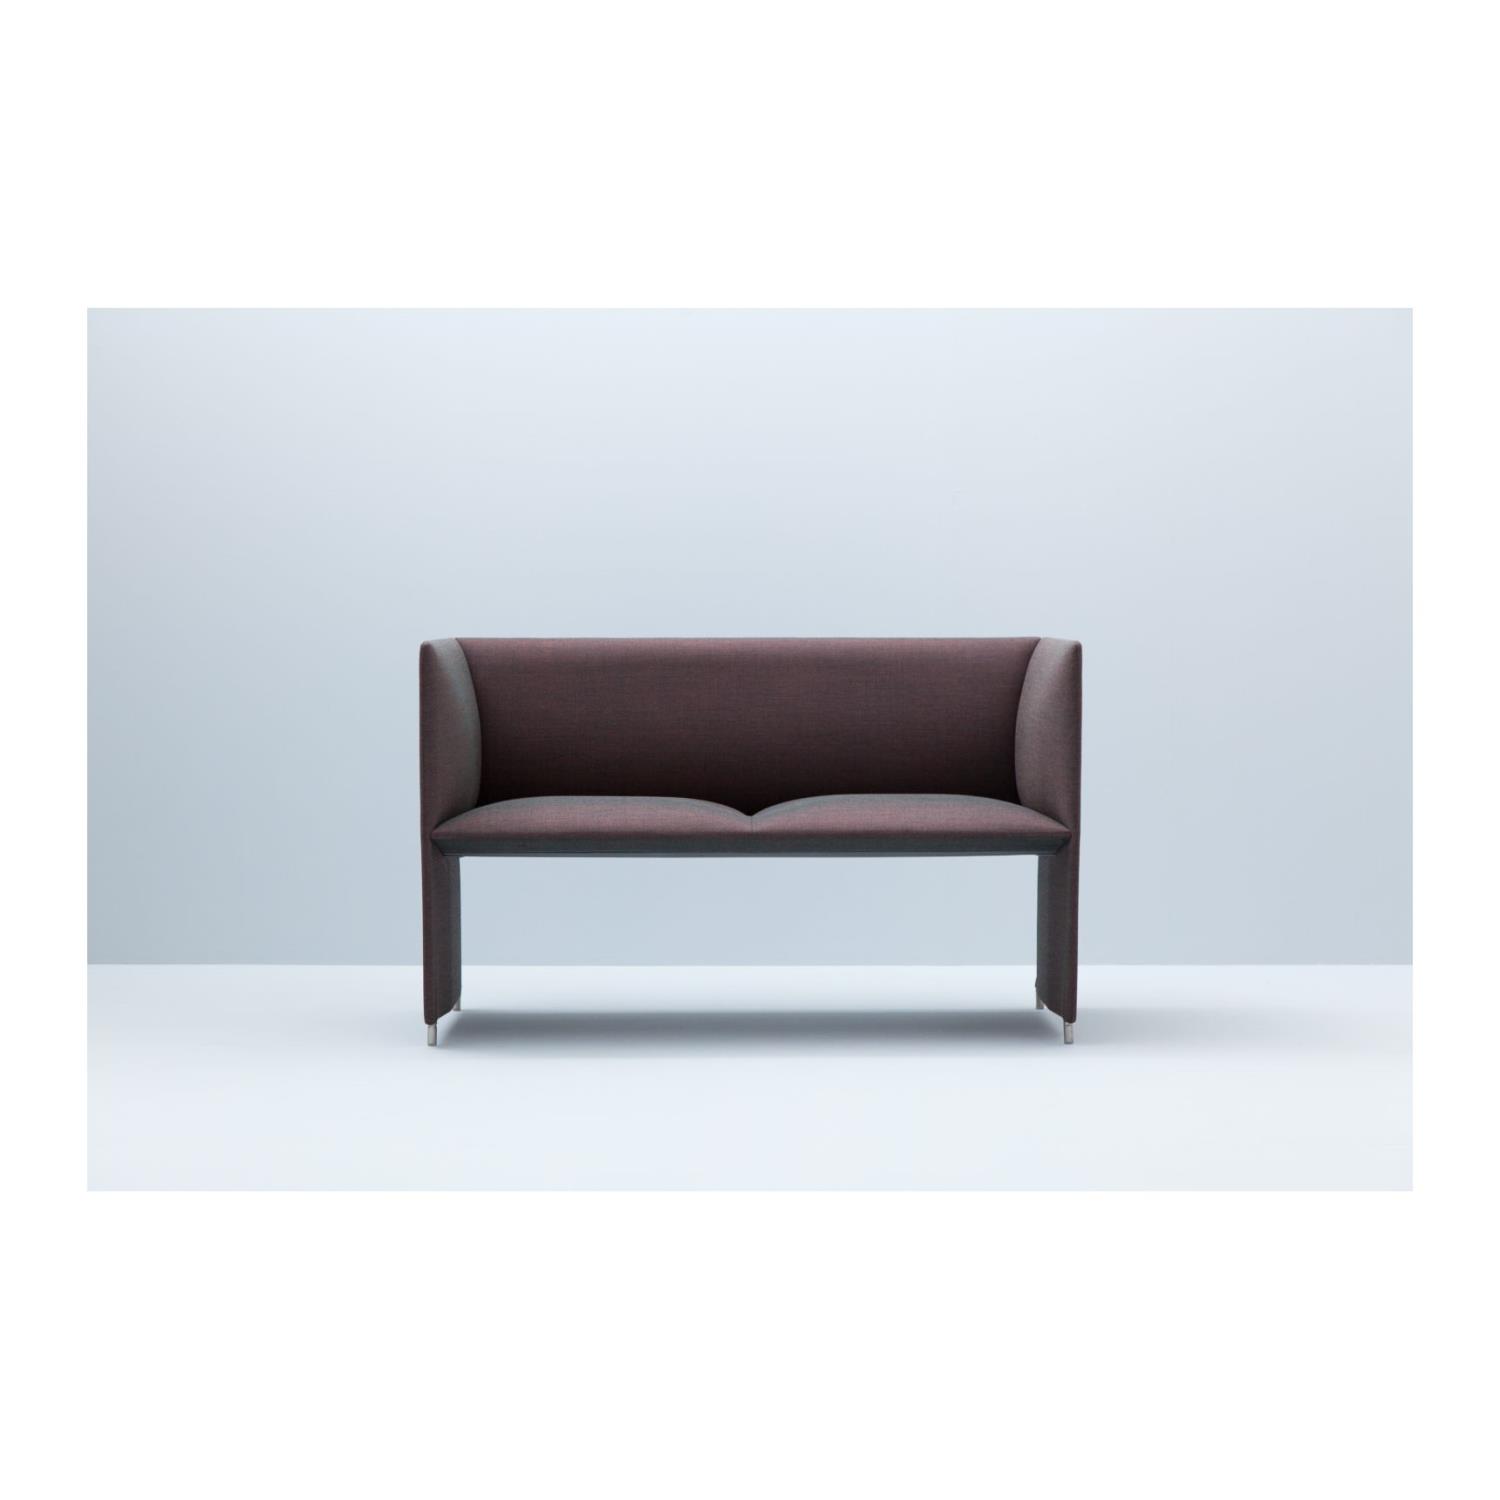 201 | Mono | 2-Seter Sofa